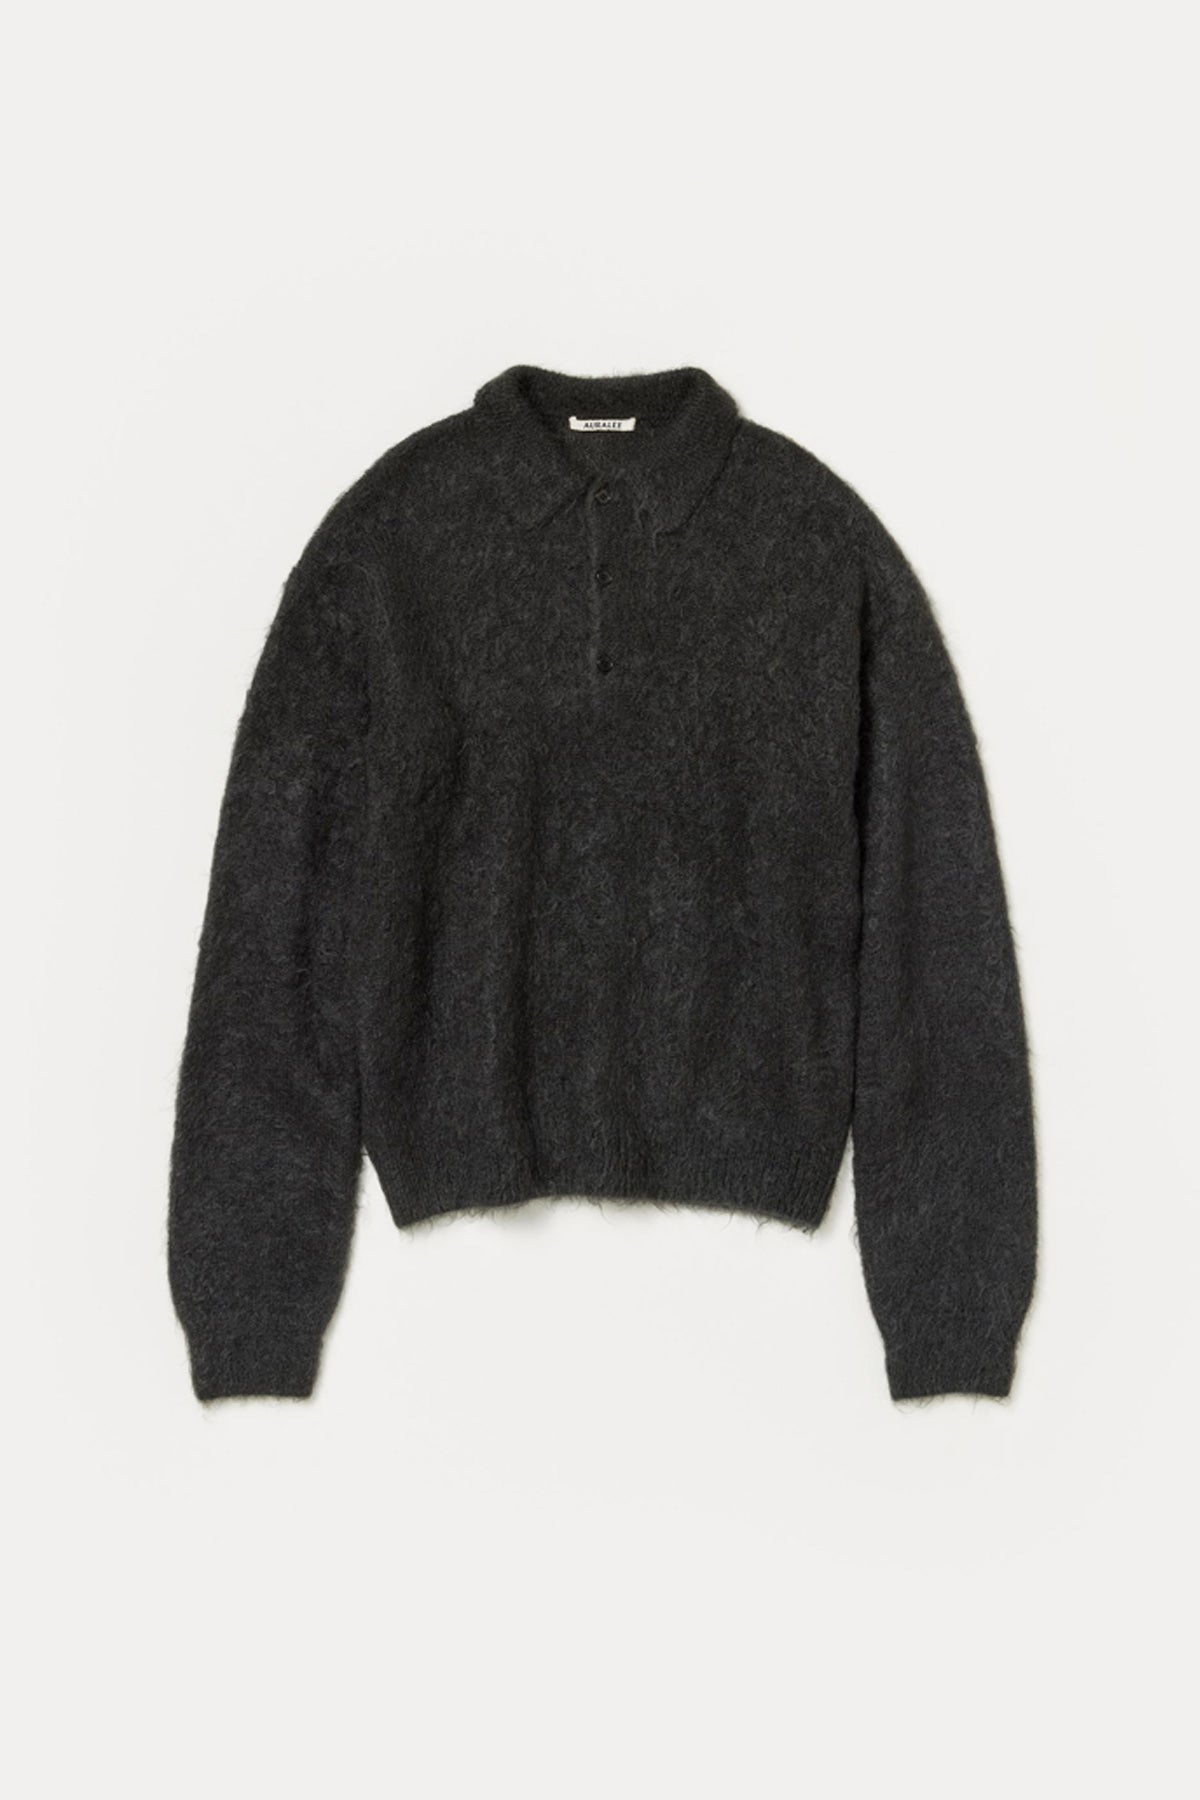 安心発送 RLTFT Saint MOHAIR mohair KNIT BLACK Oversized sweater of ...